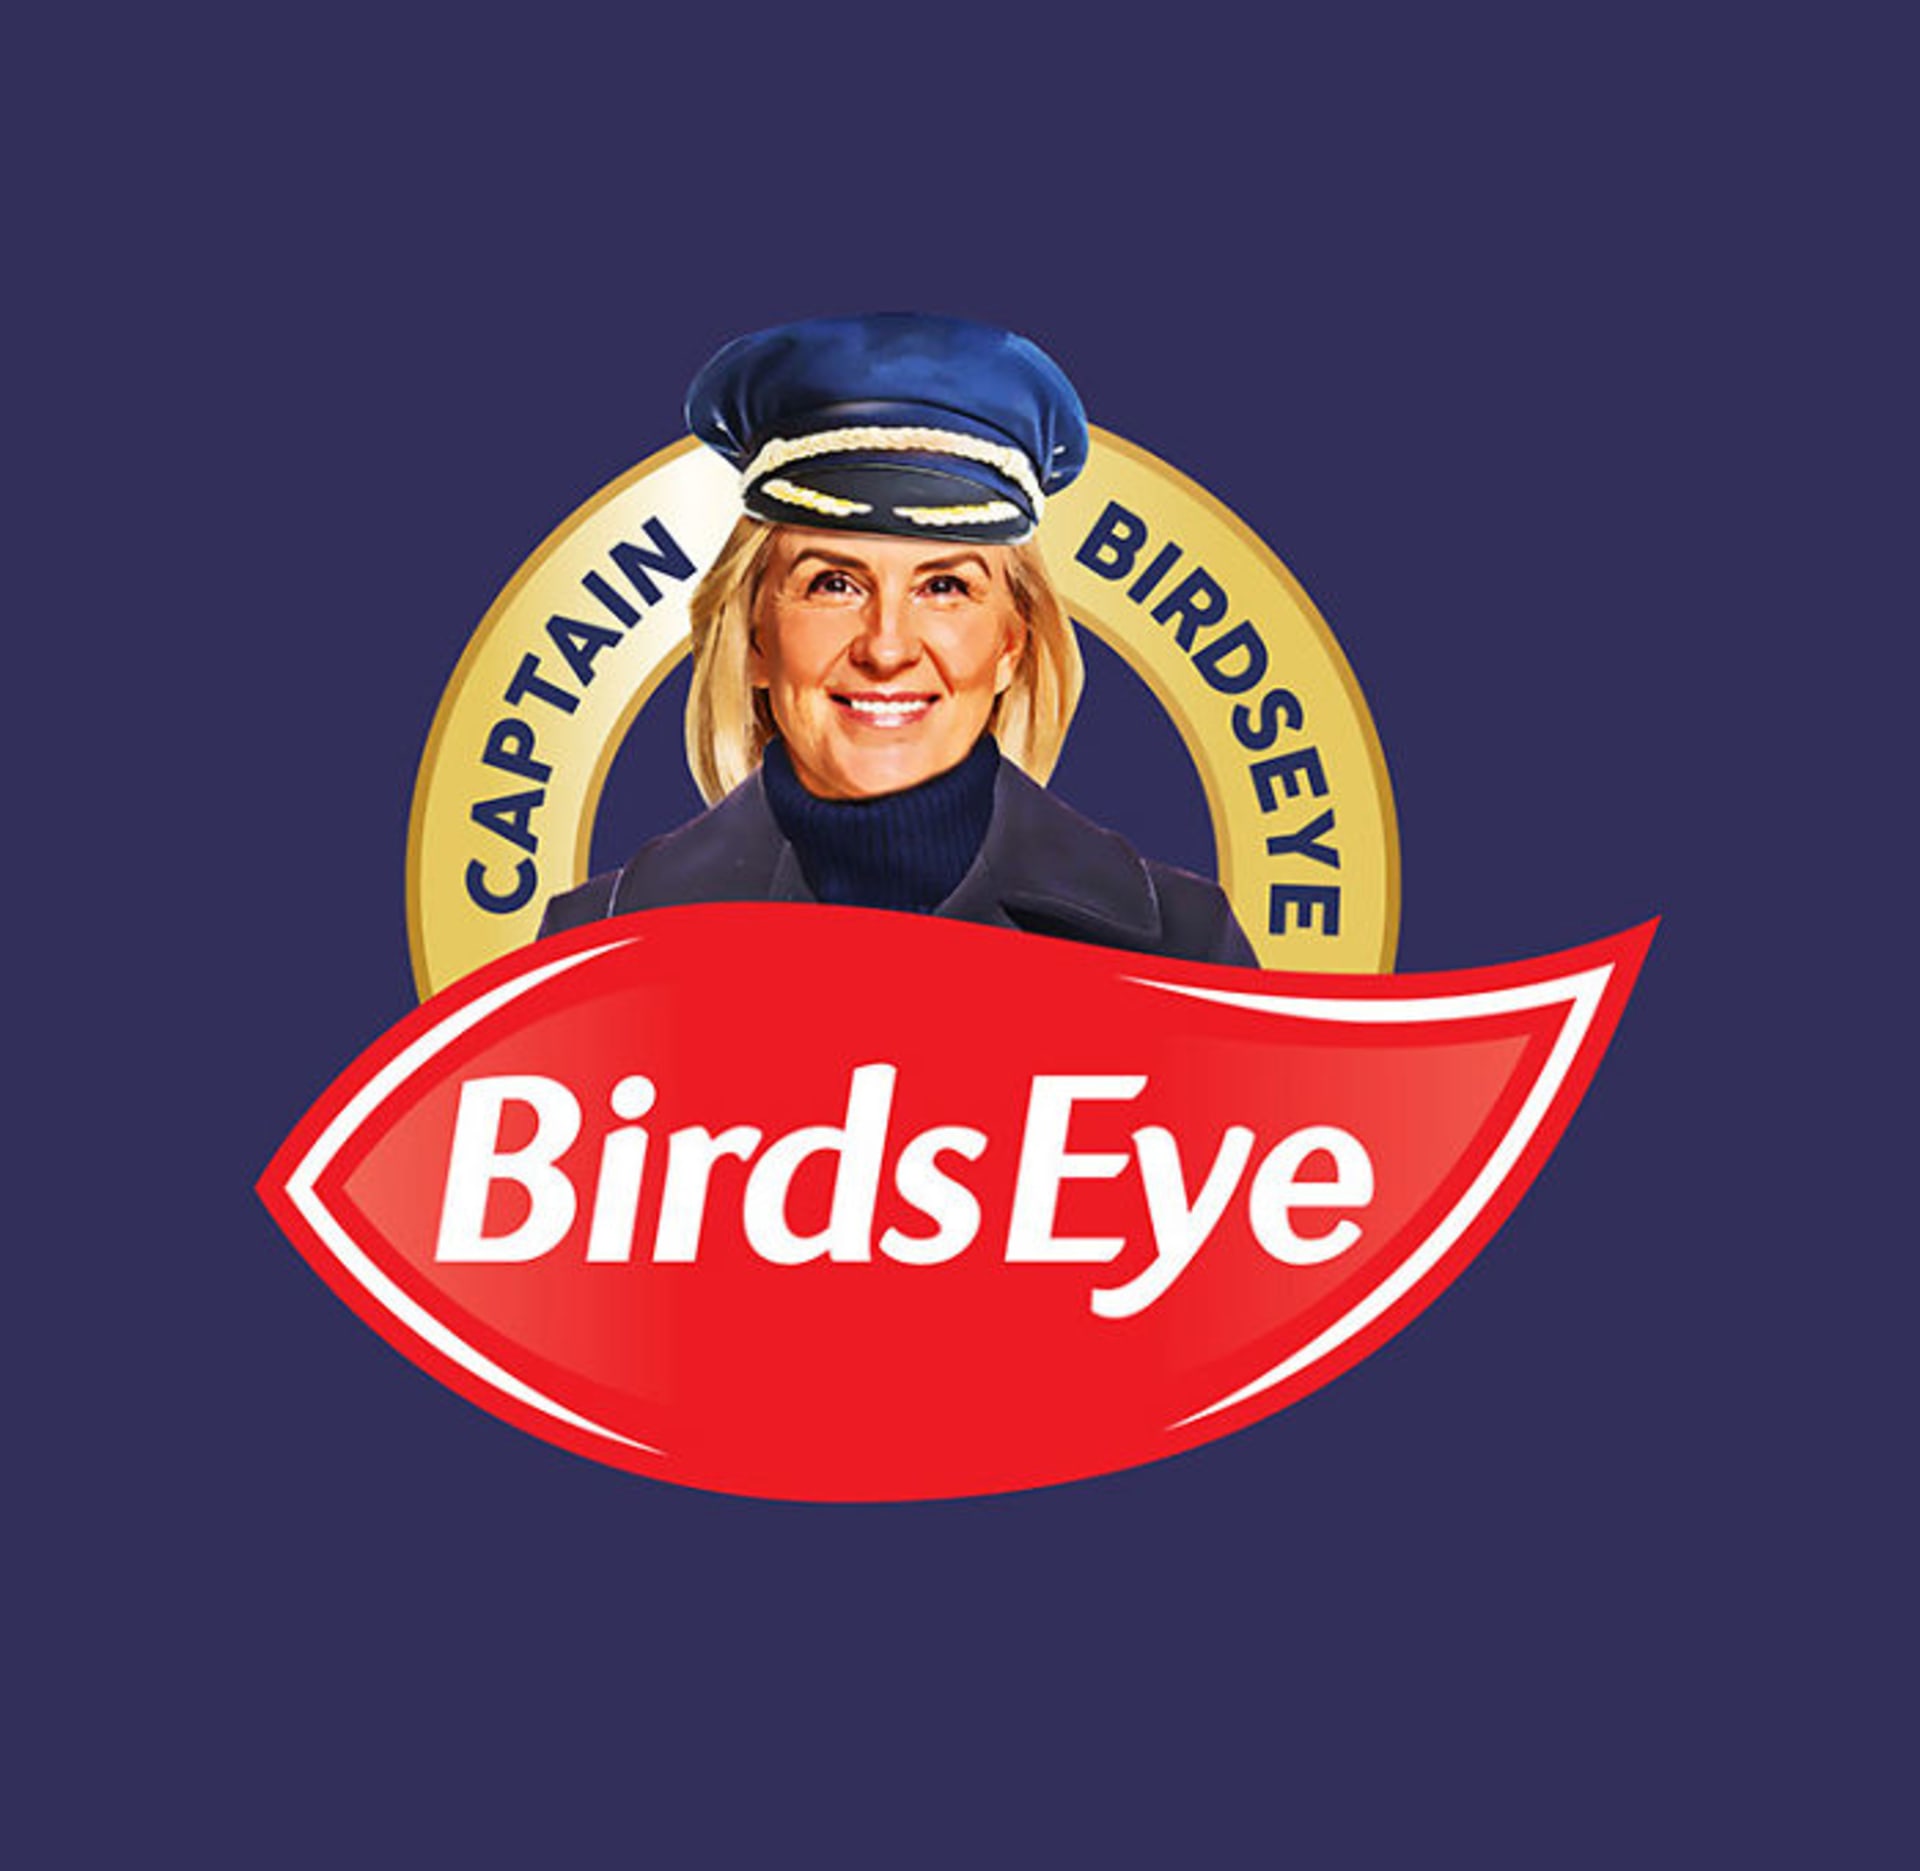 Kapitán BirdsEye